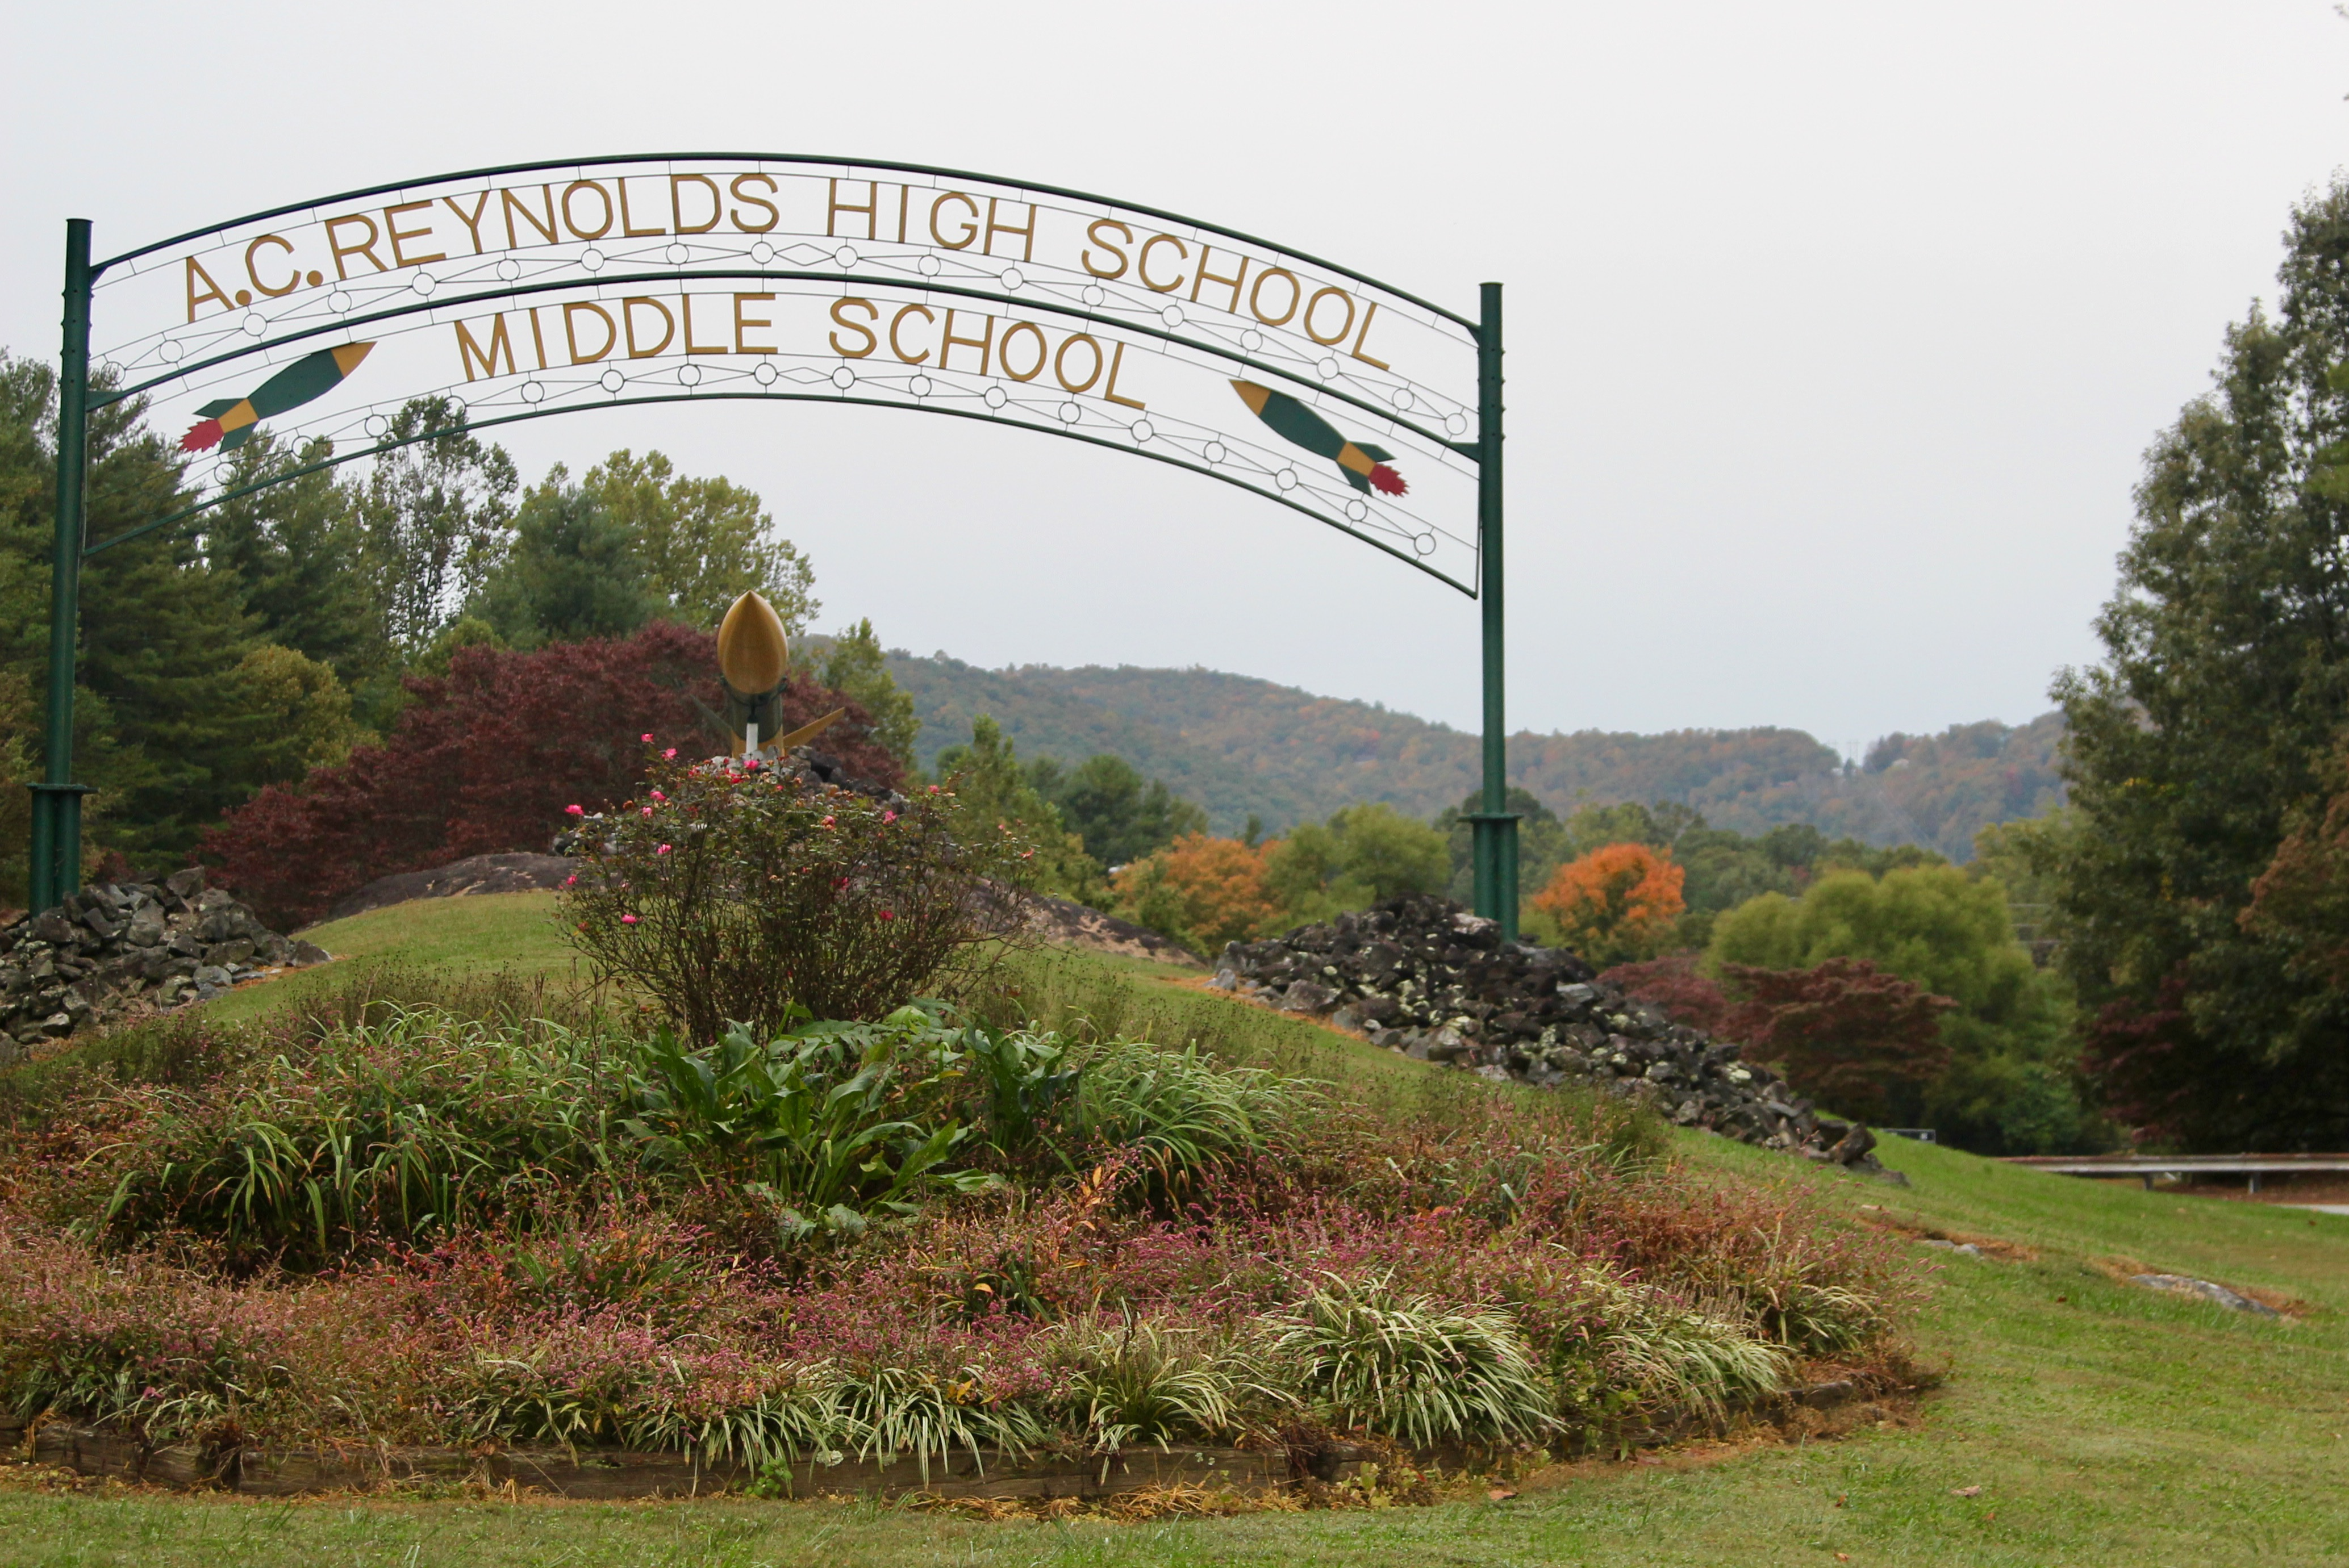 A.C. Reynolds Middle School